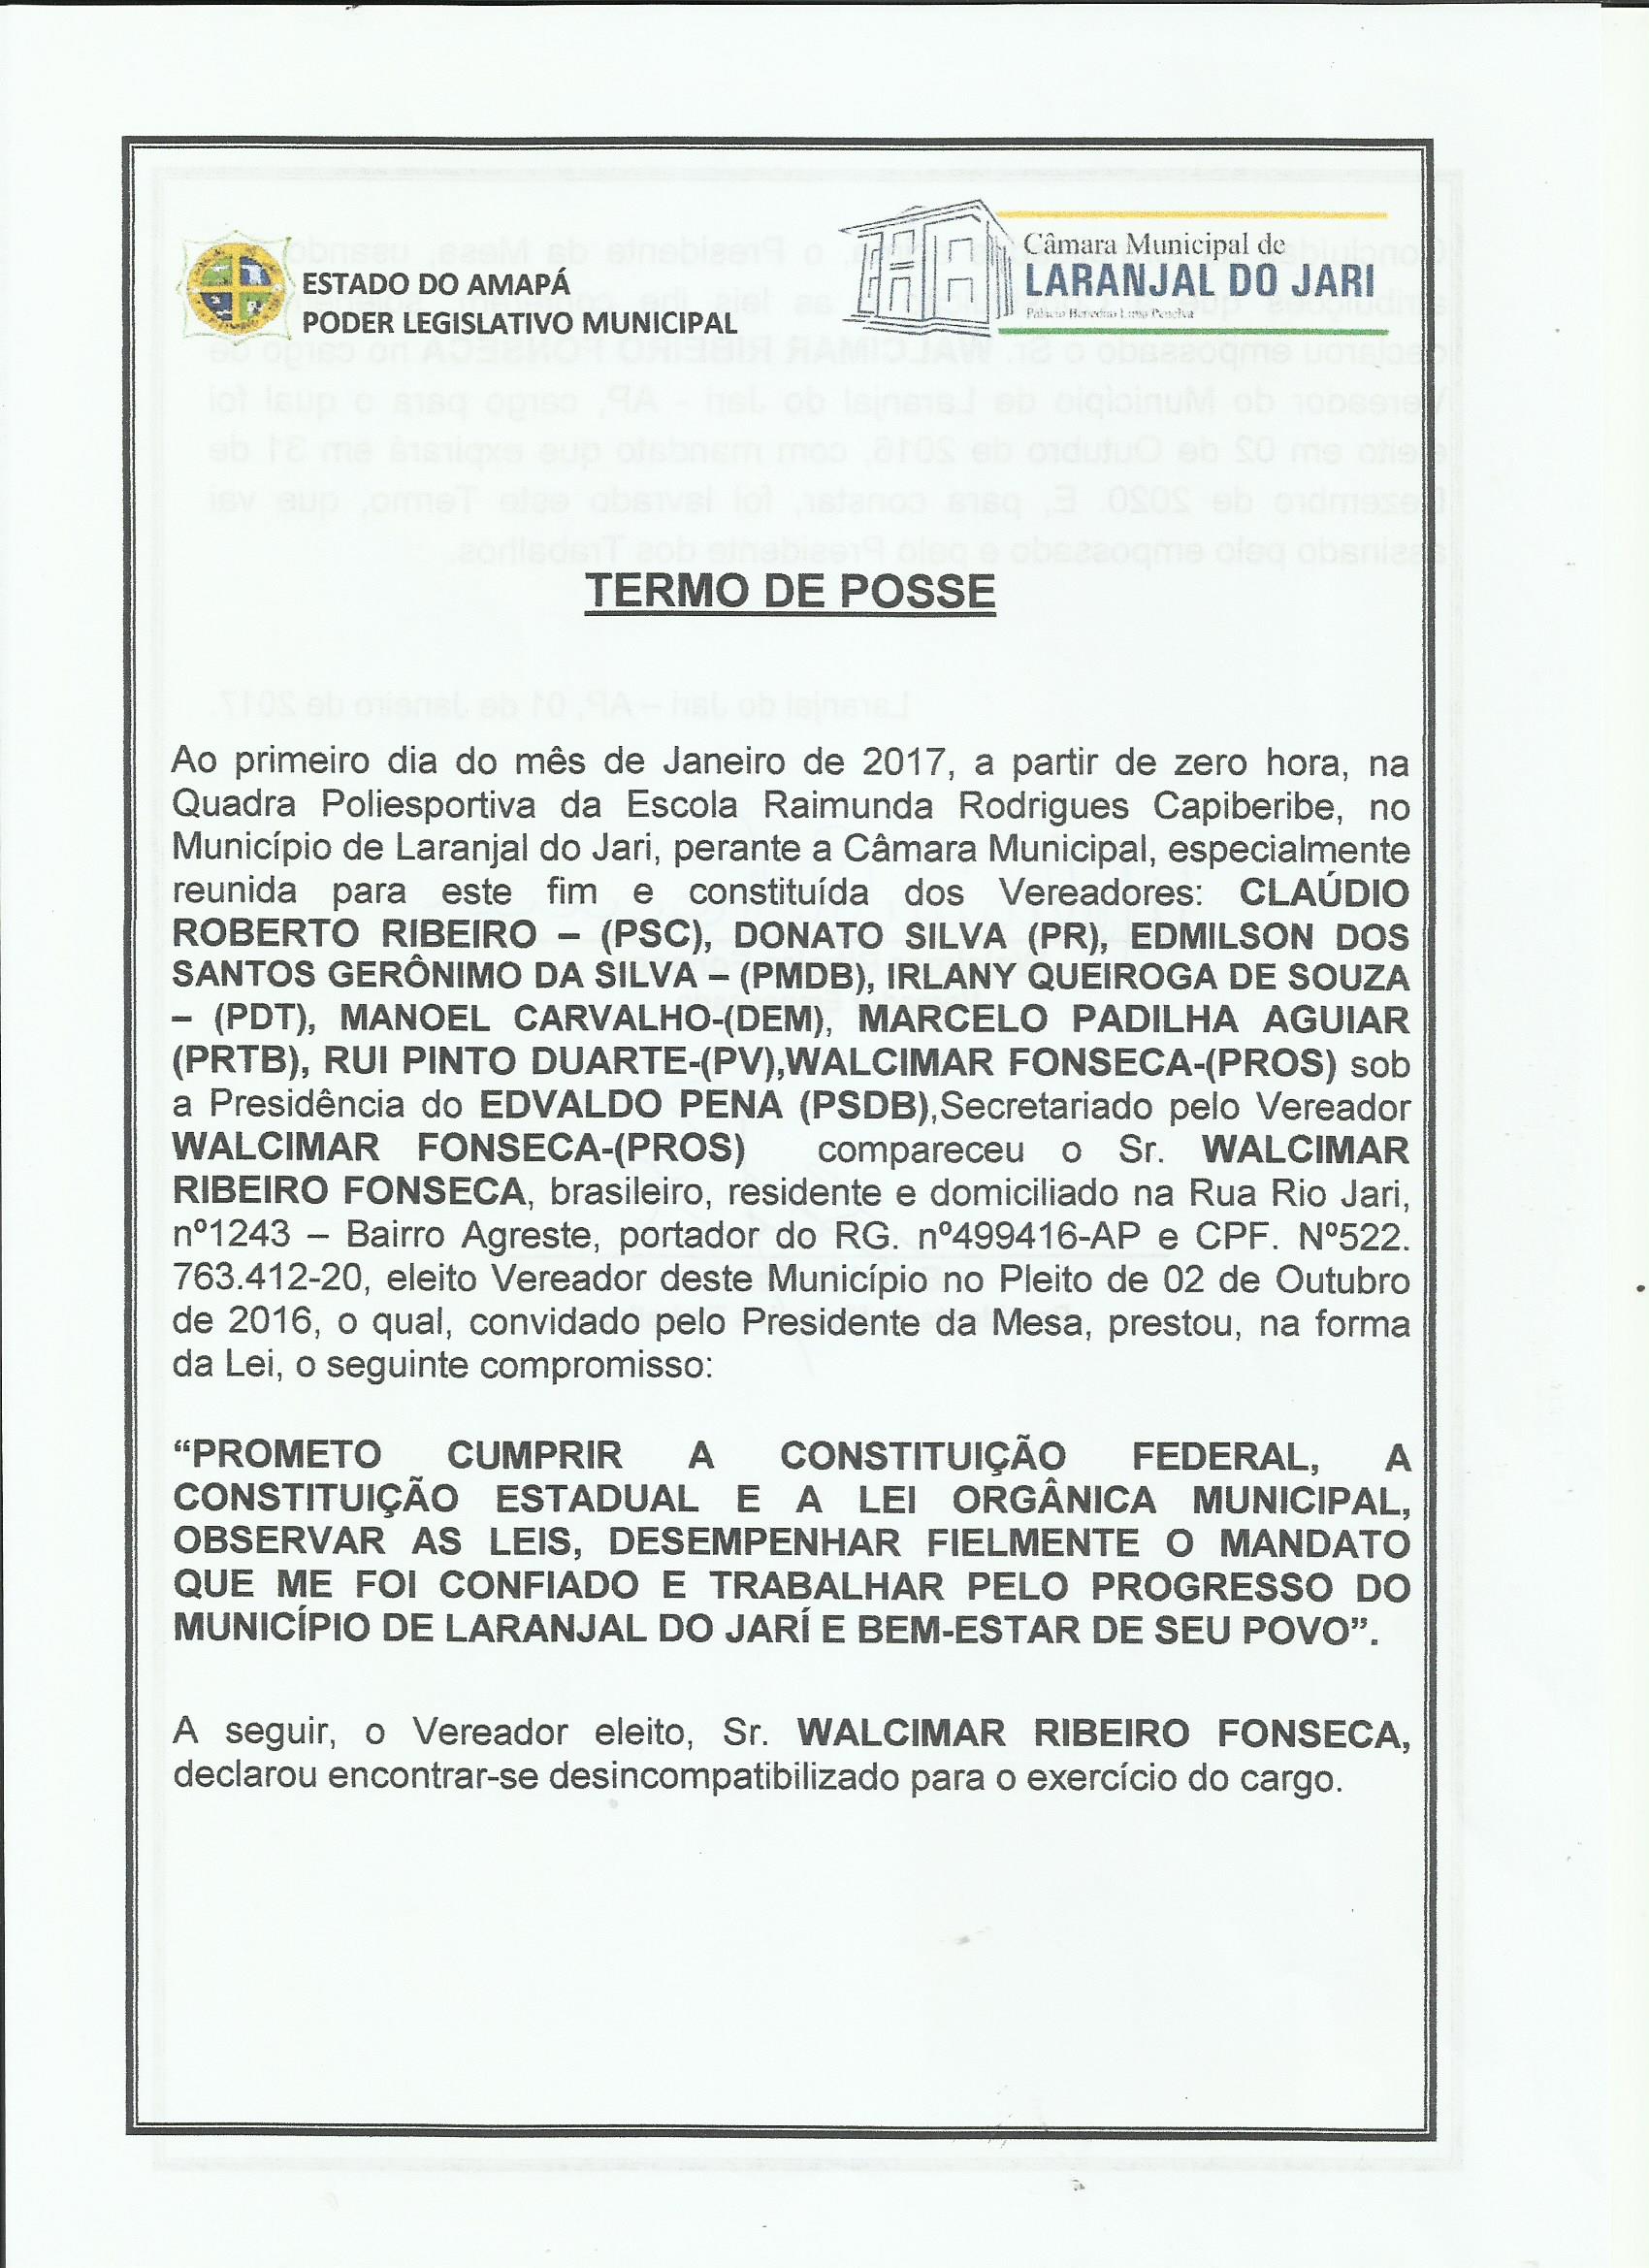 Termo de Posse do Vereador Walcimar Fonseca, Frente.jpg